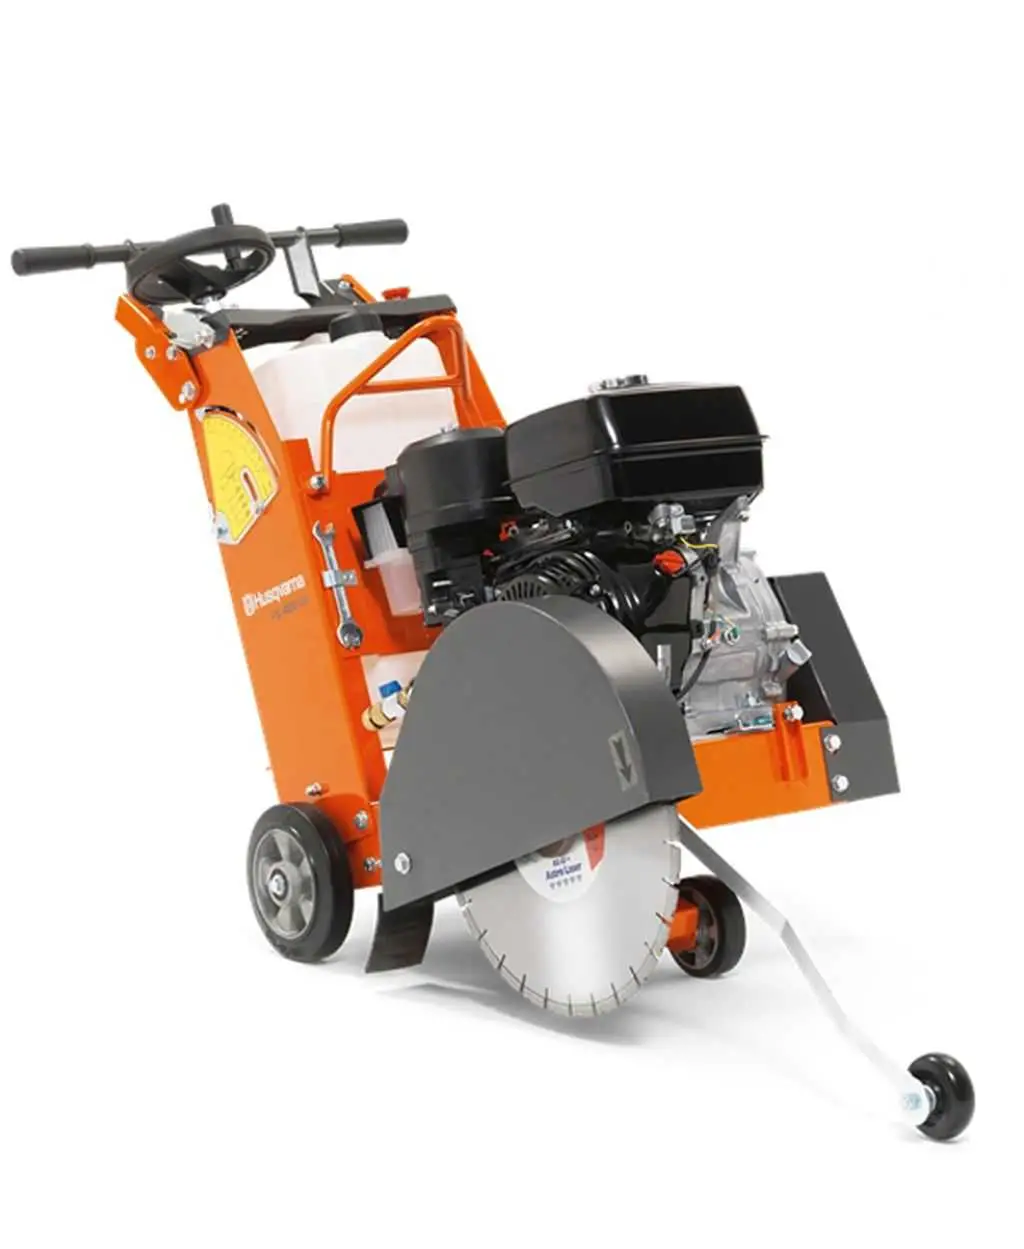 Product cart gomez oviedo alquiler cortadora de asfalto de 13 cv. disco 400 mm.